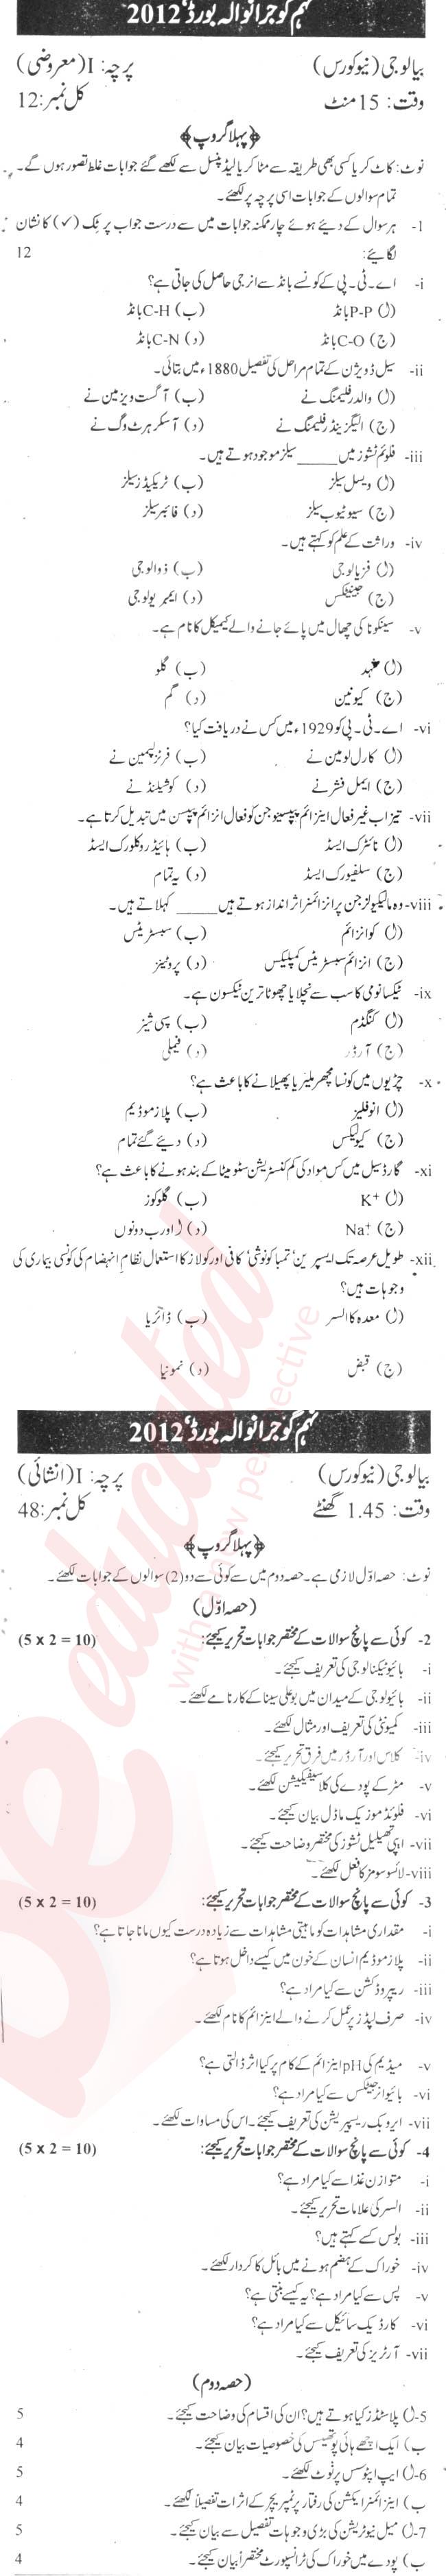 Biology 9th Urdu Medium Past Paper Group 1 BISE Gujranwala 2012